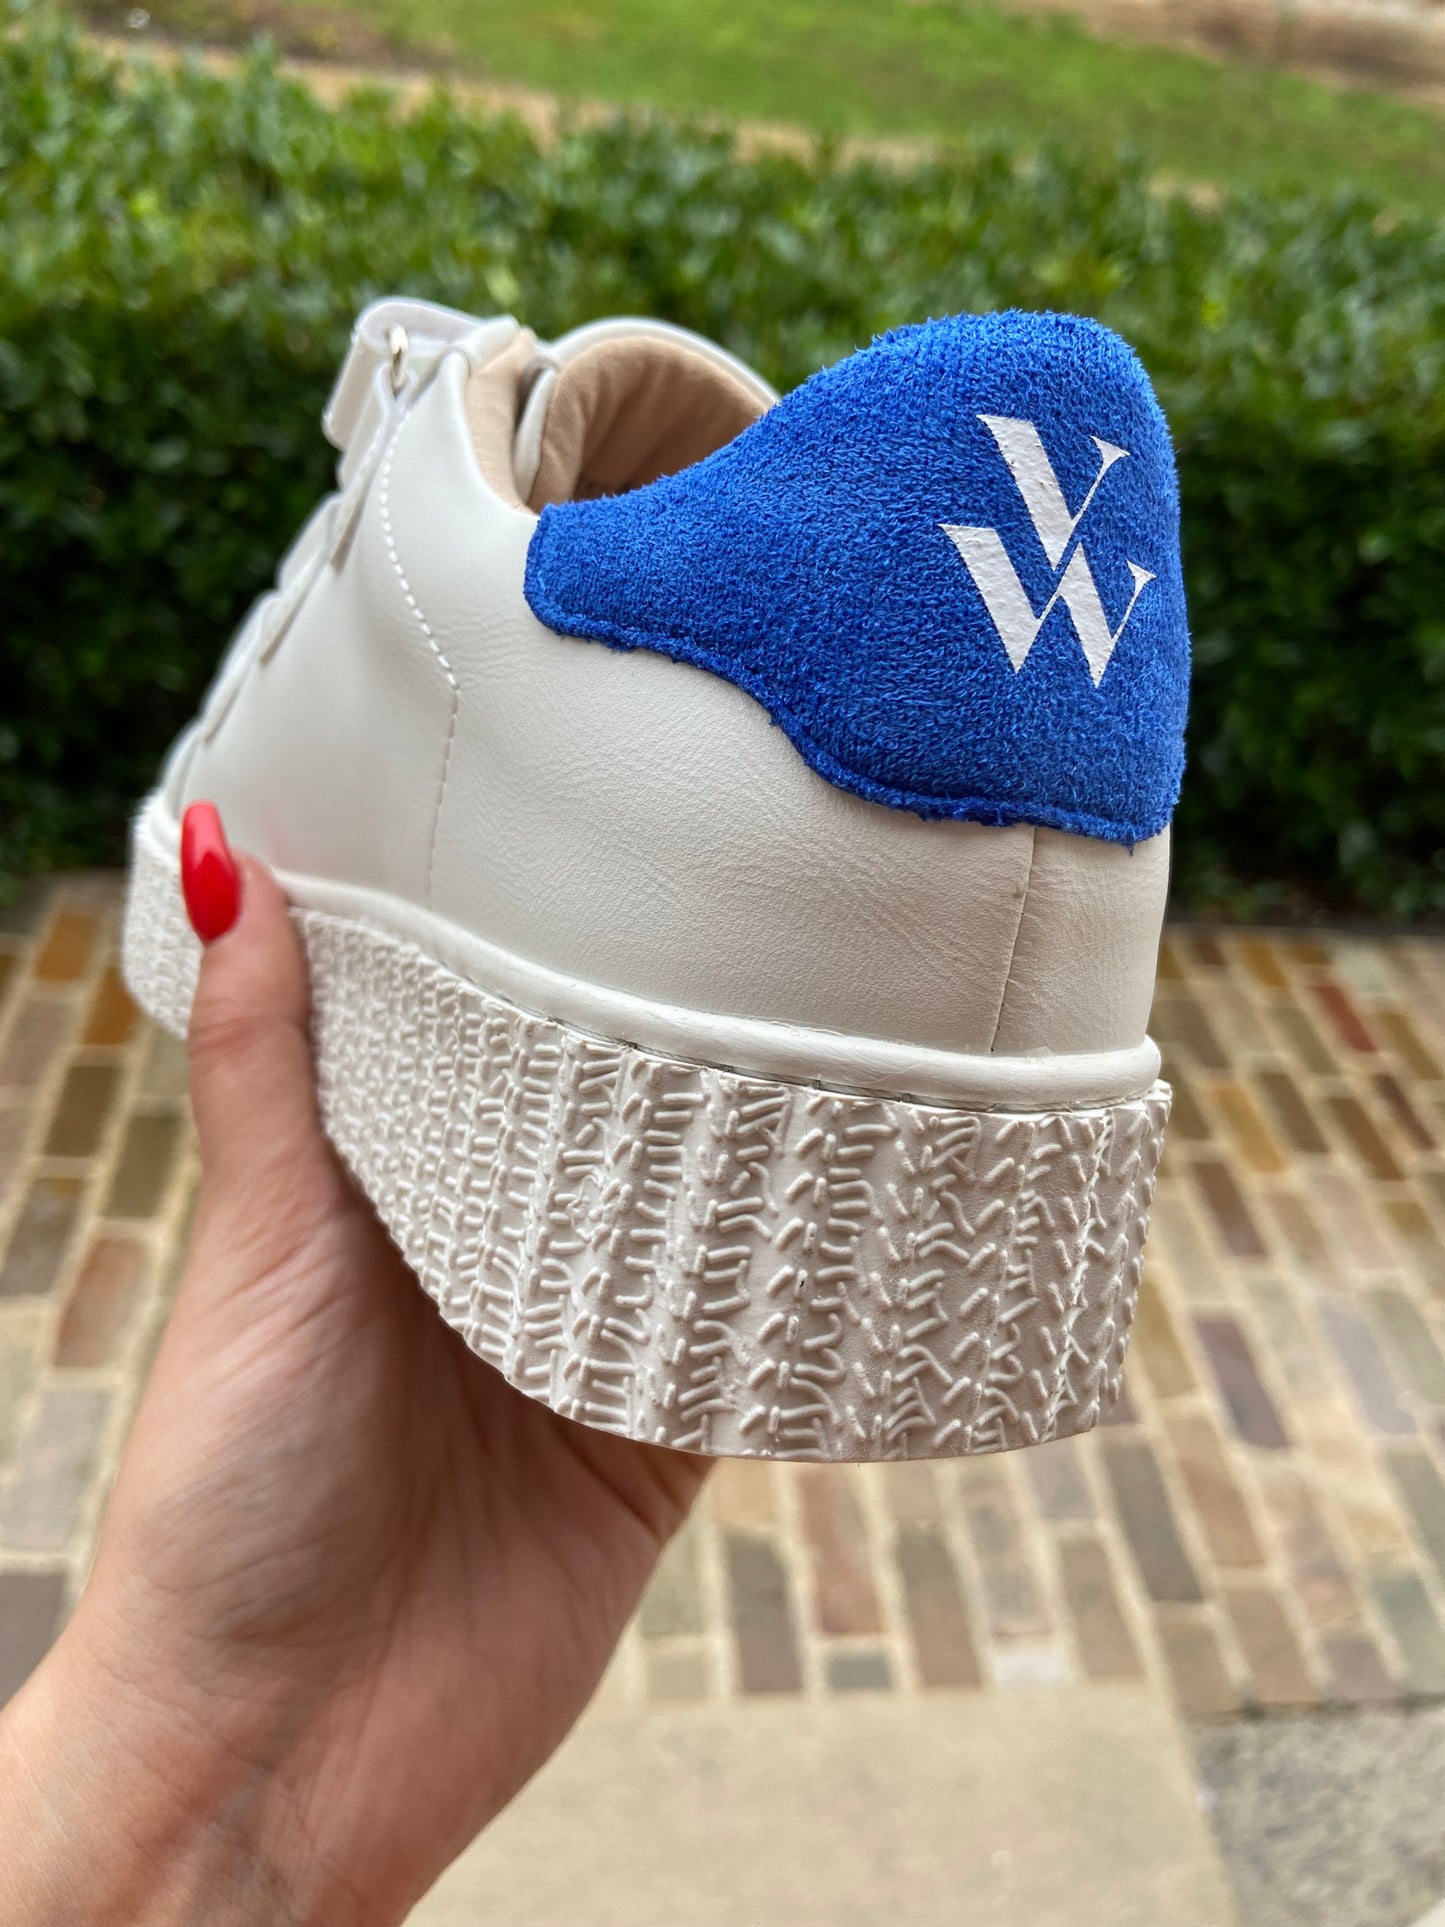 Basket Vanessa Wu VICKY INDIGO